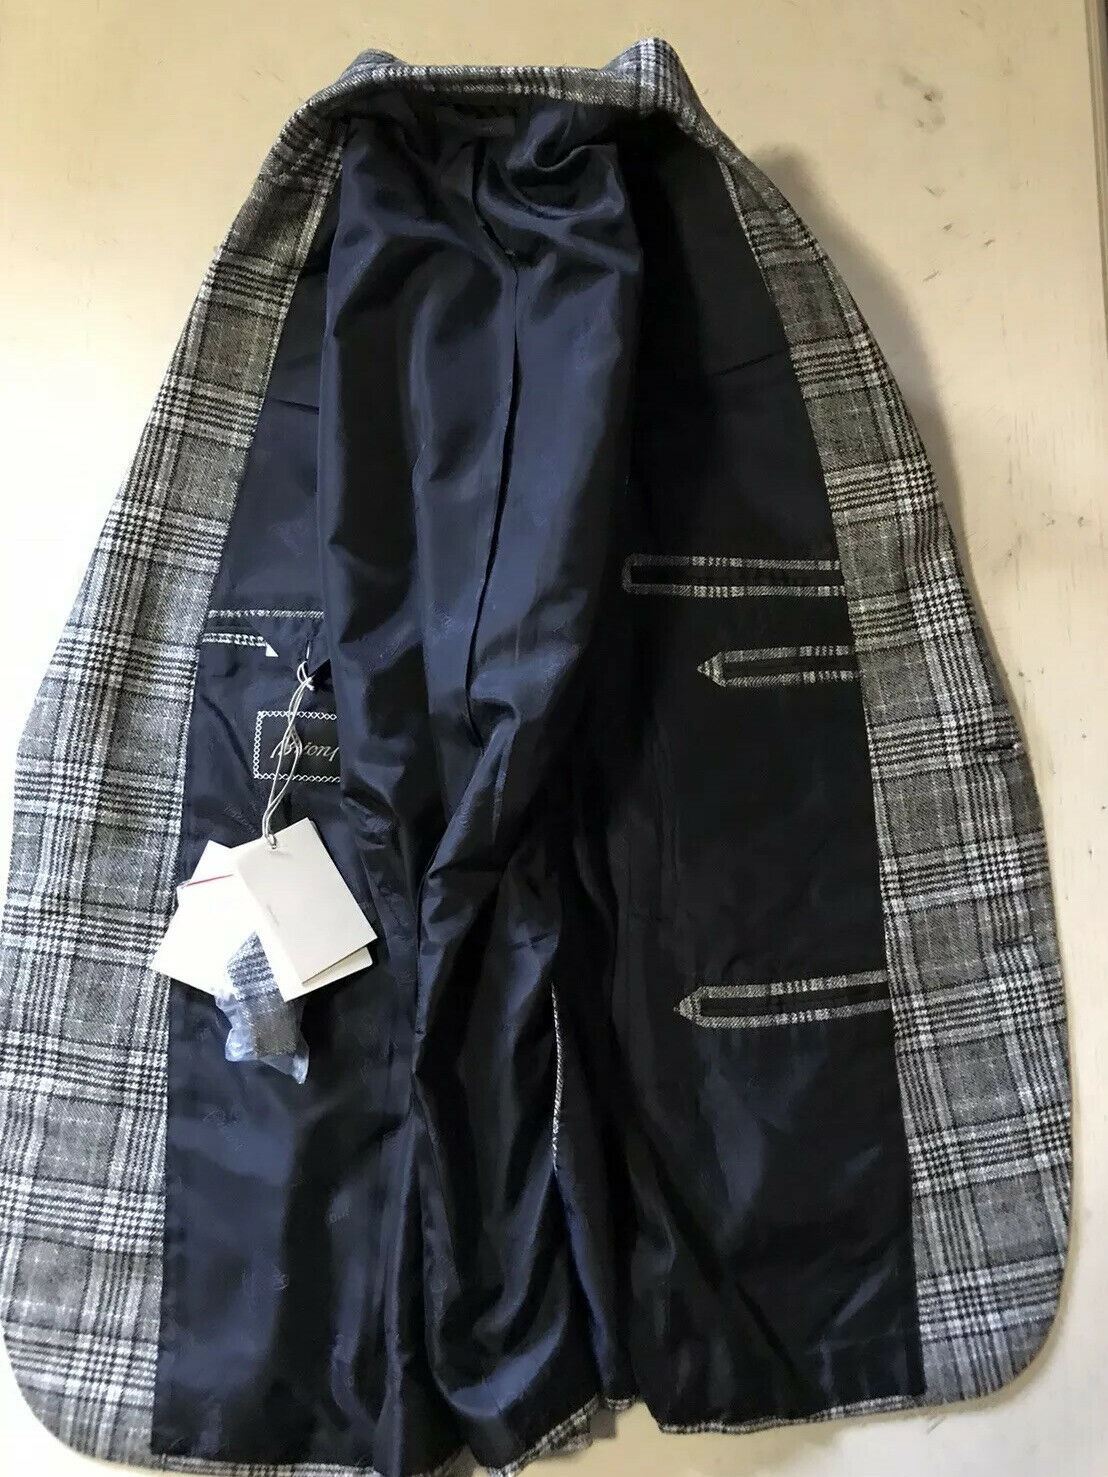 NWT $5900 Brioni Men Glen Спортивный пиджак в клетку Серый/черный 40R США/50R ЕС